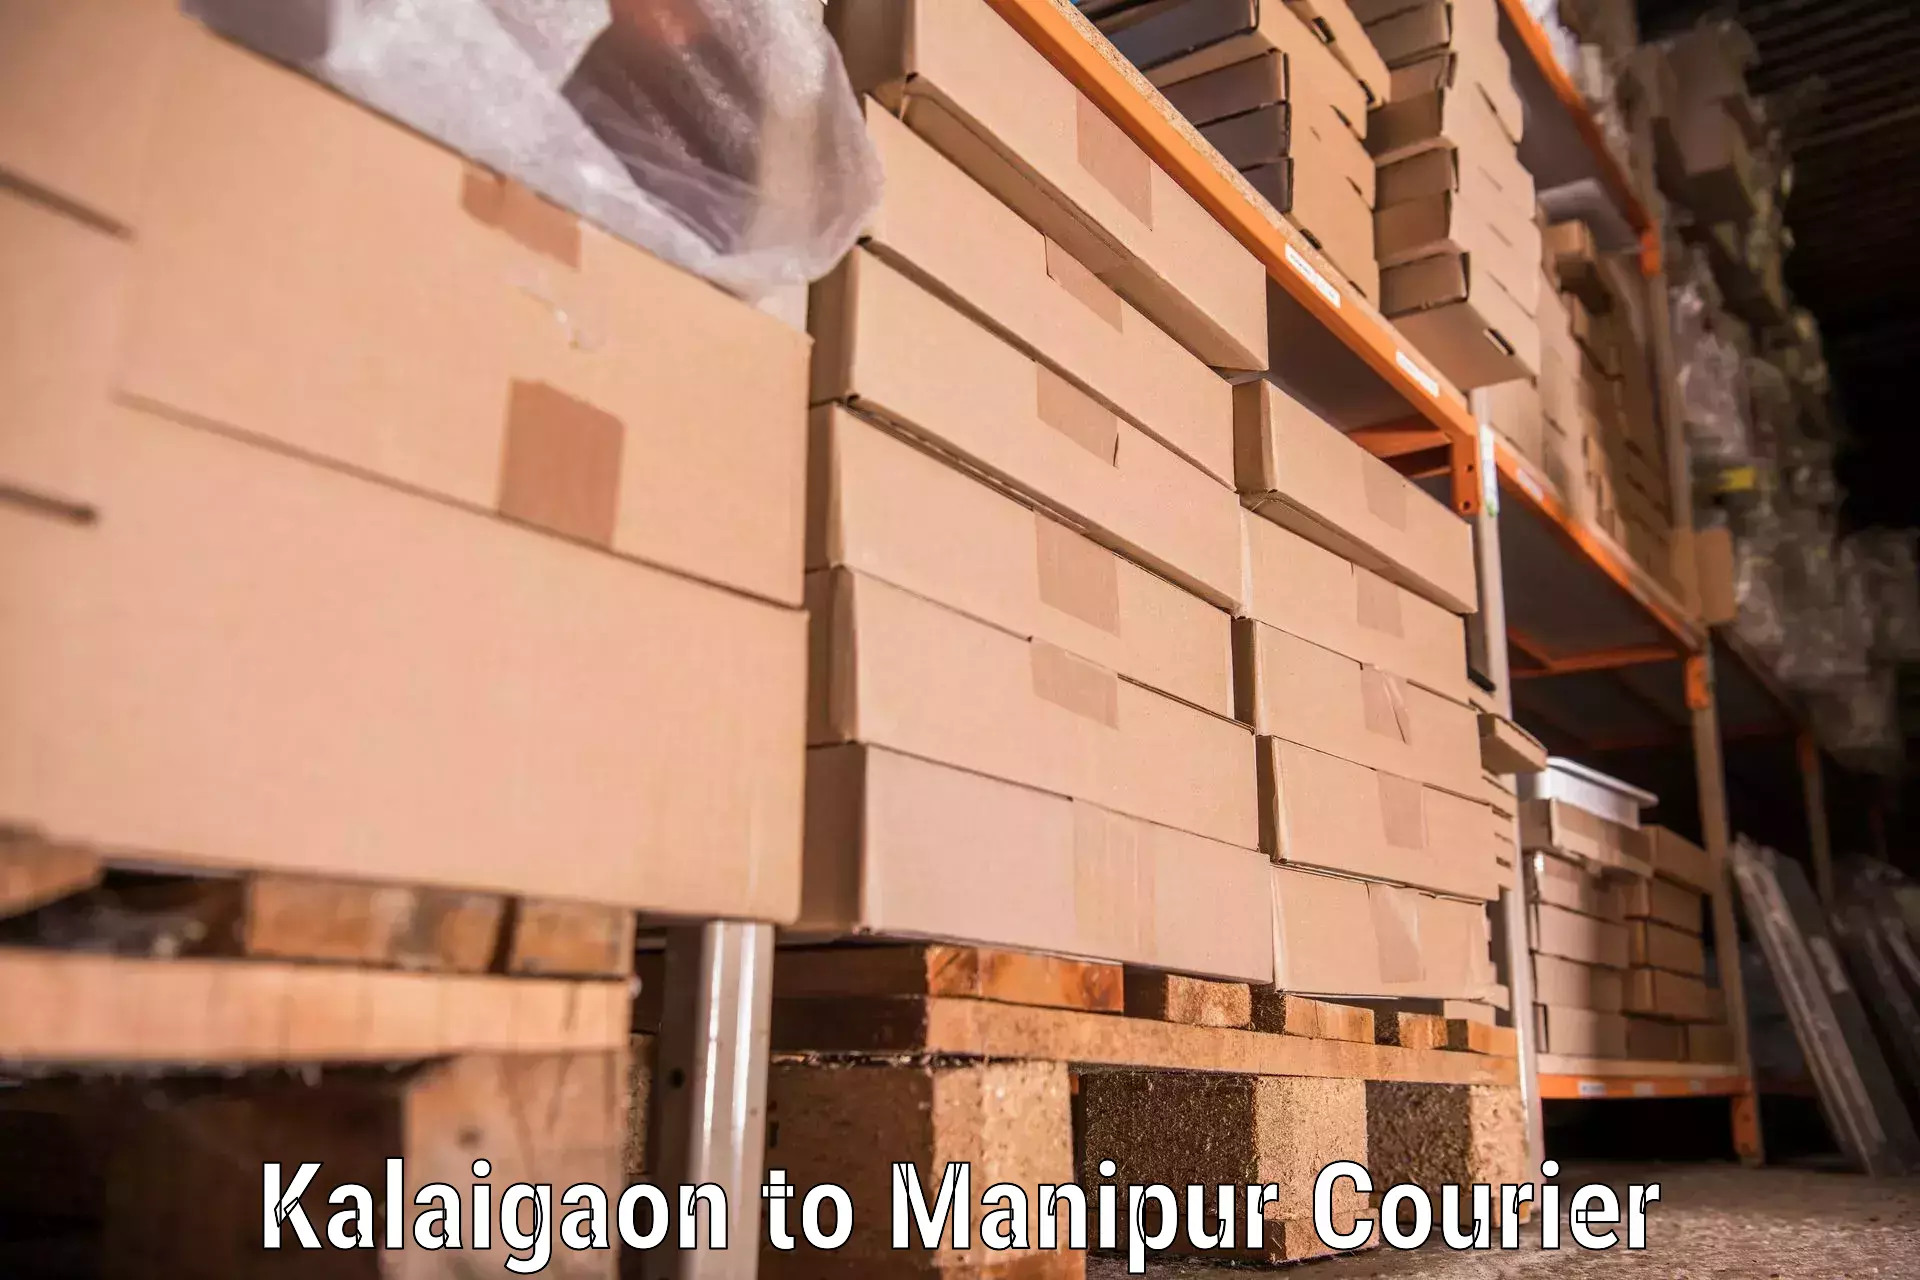 Efficient moving company Kalaigaon to Manipur